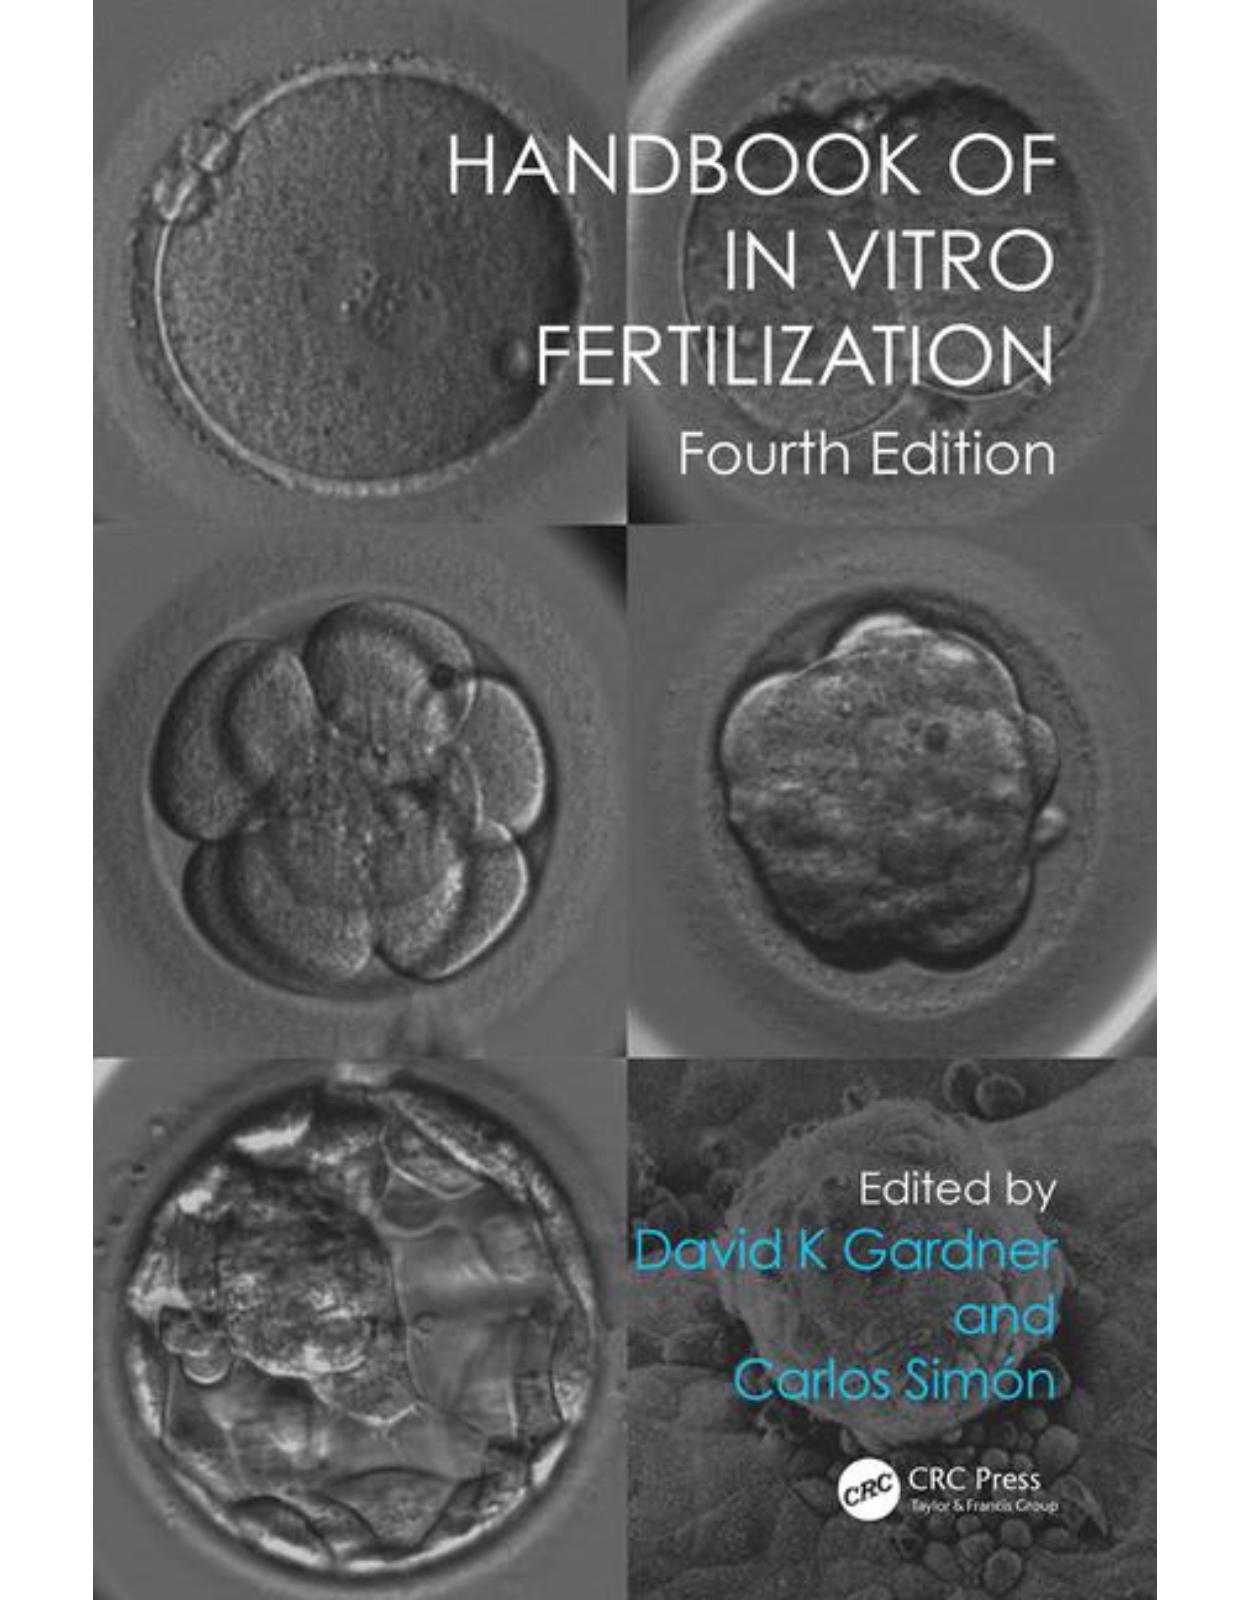  Handbook of In Vitro Fertilization, Fourth Edition